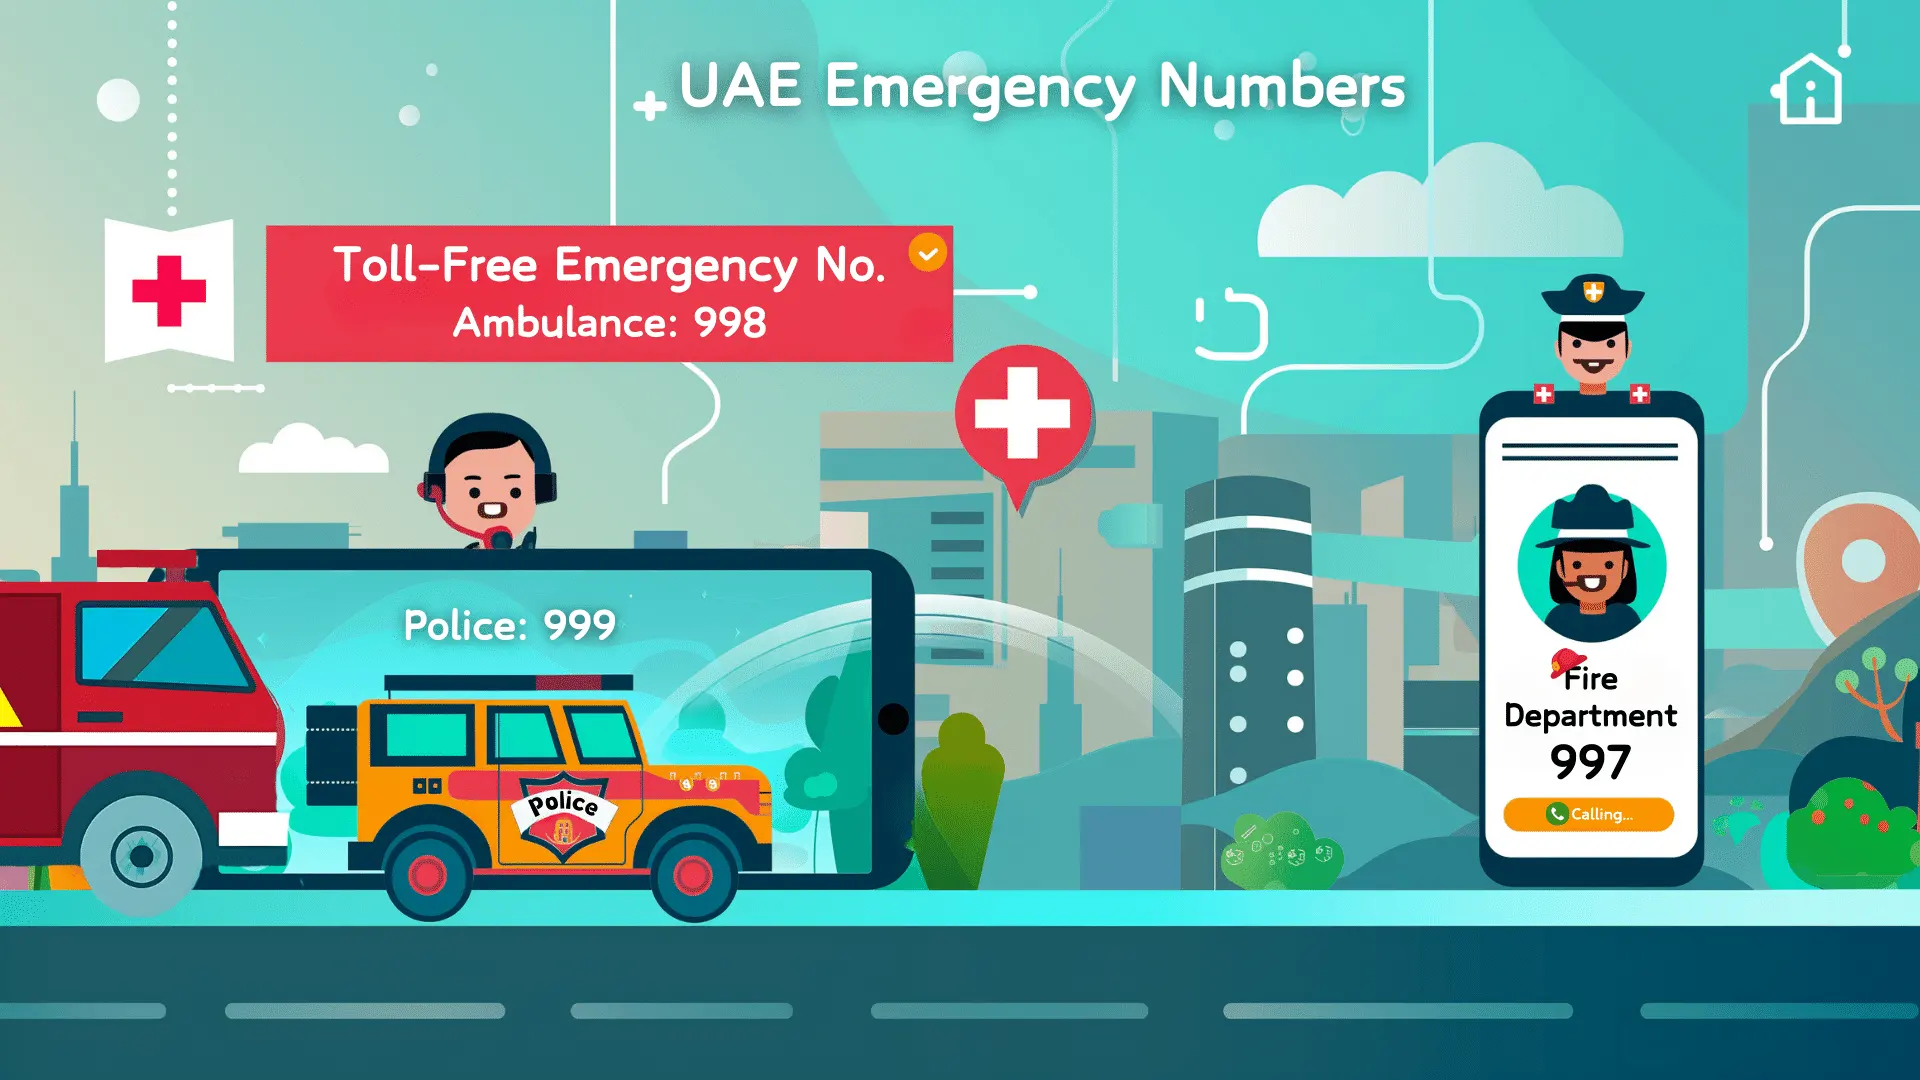 UAE Emergency Numbers